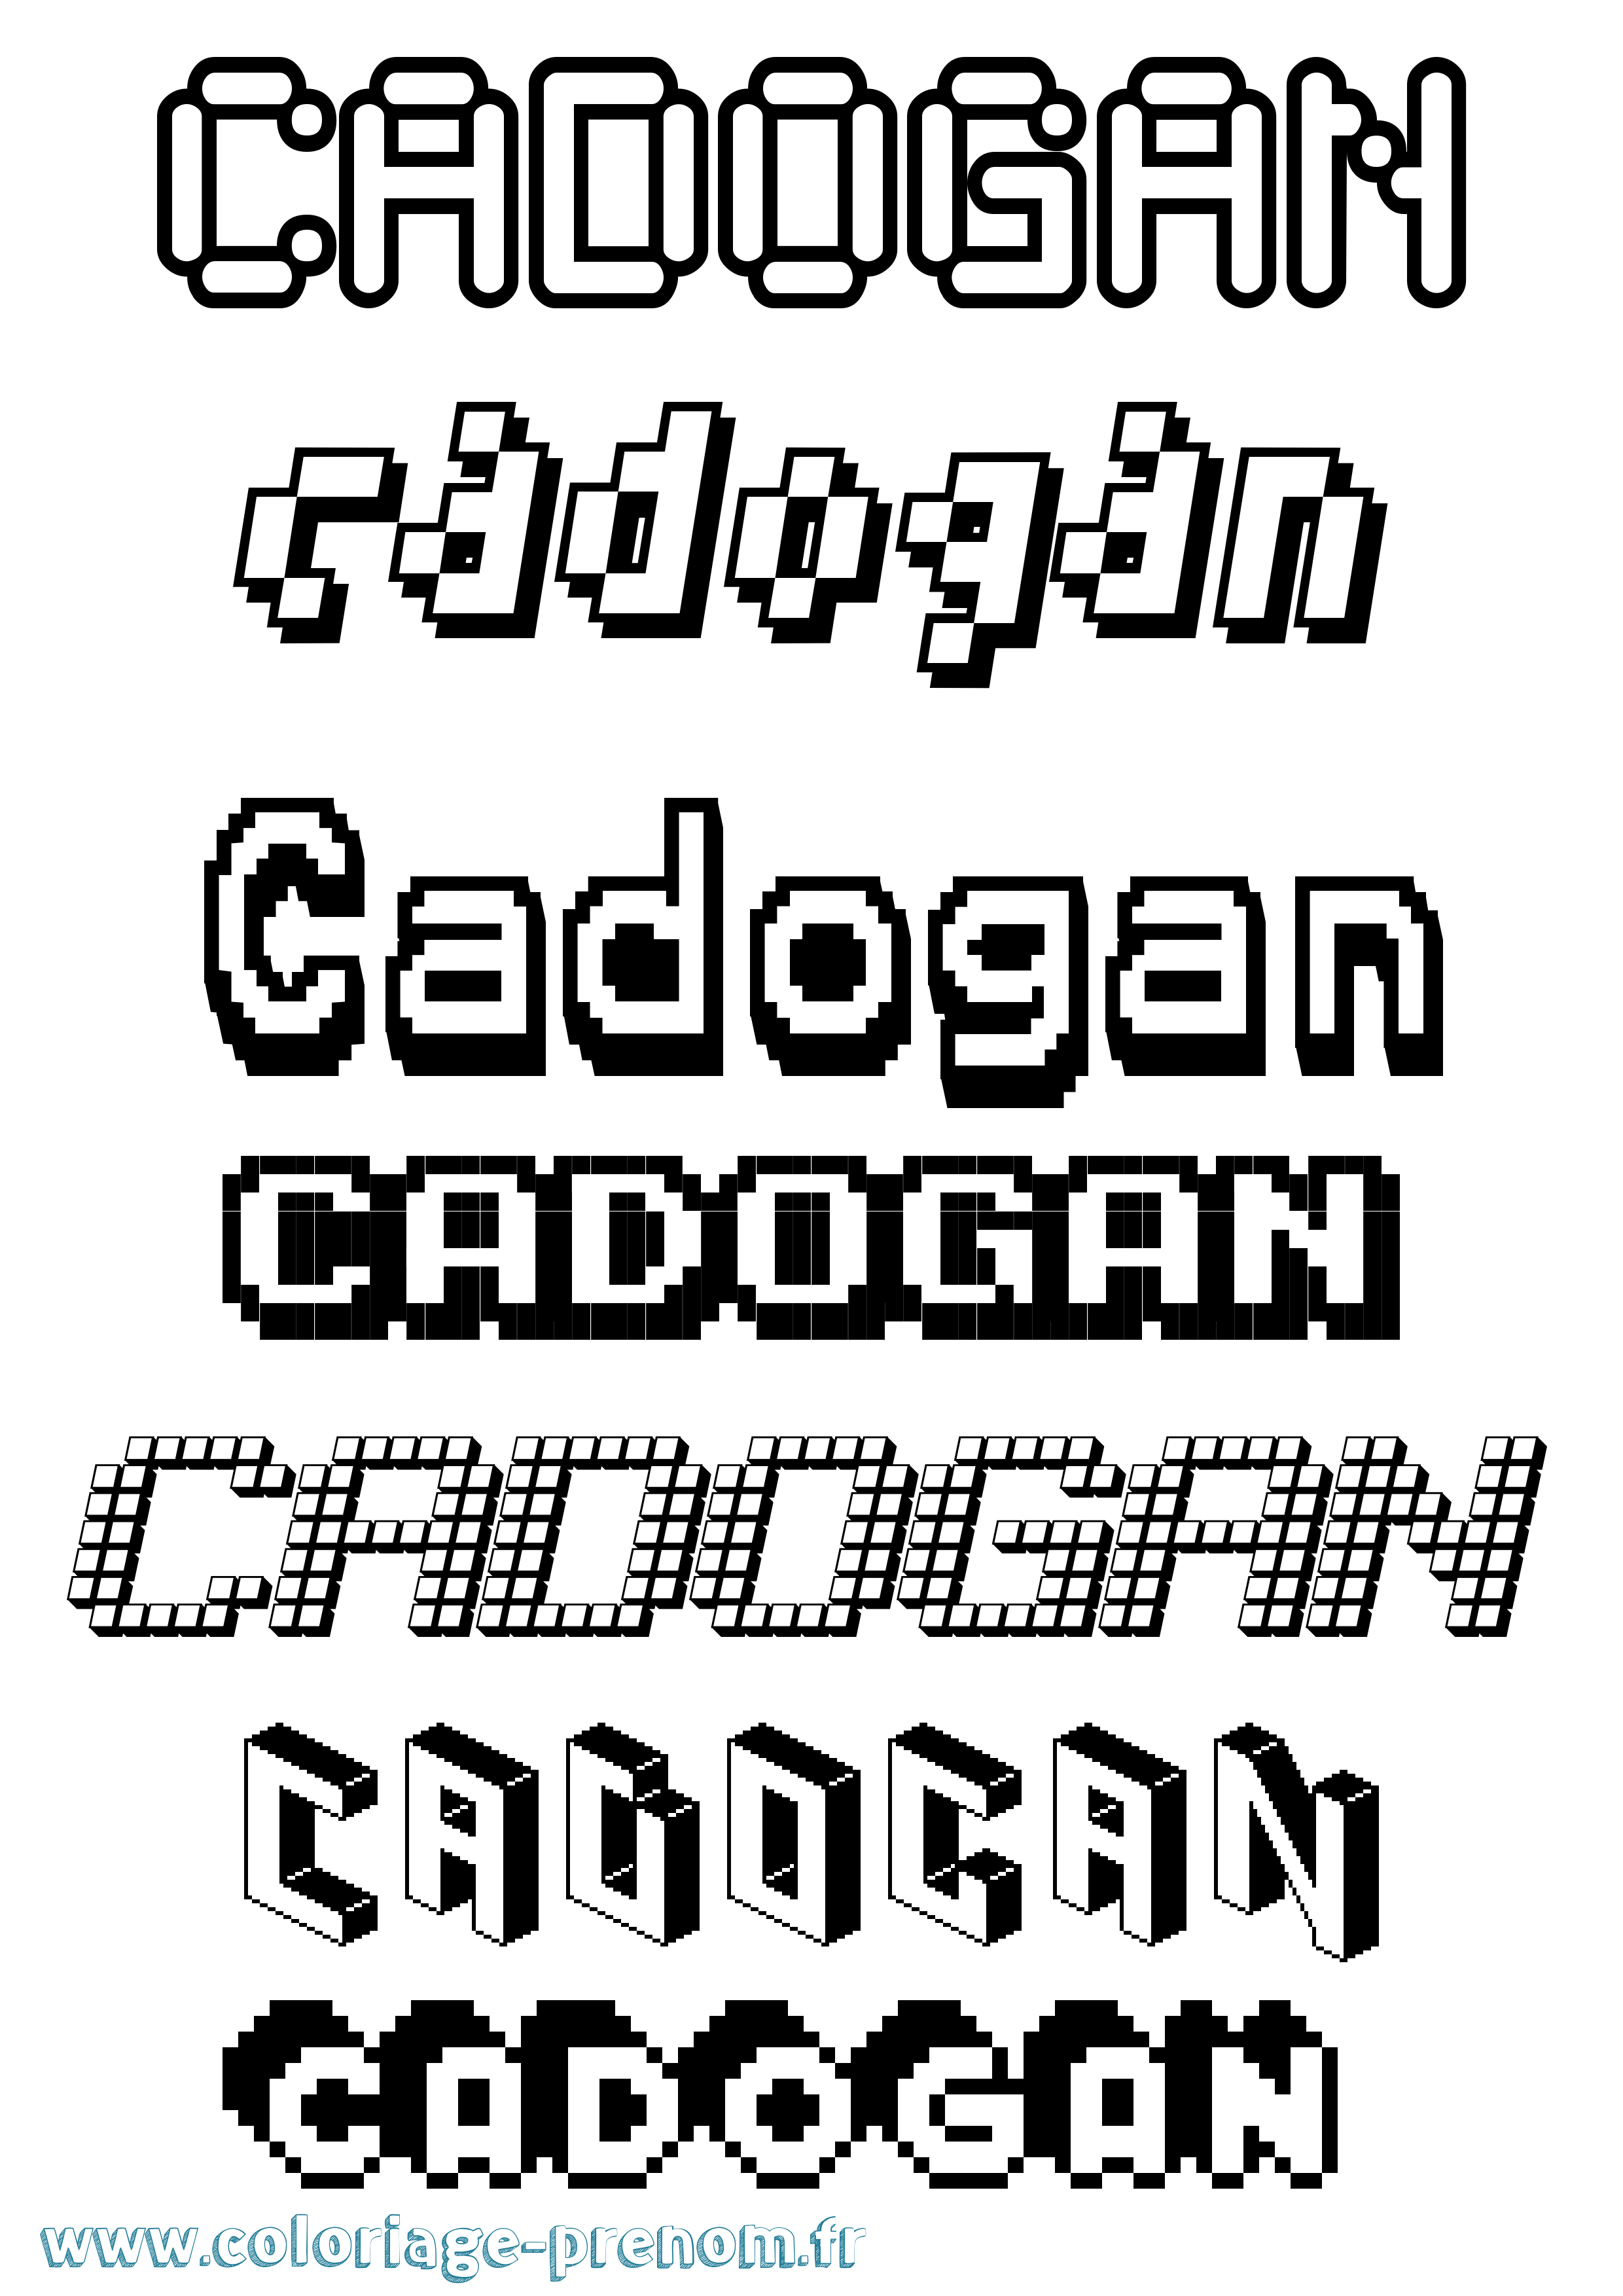 Coloriage prénom Cadogan Pixel